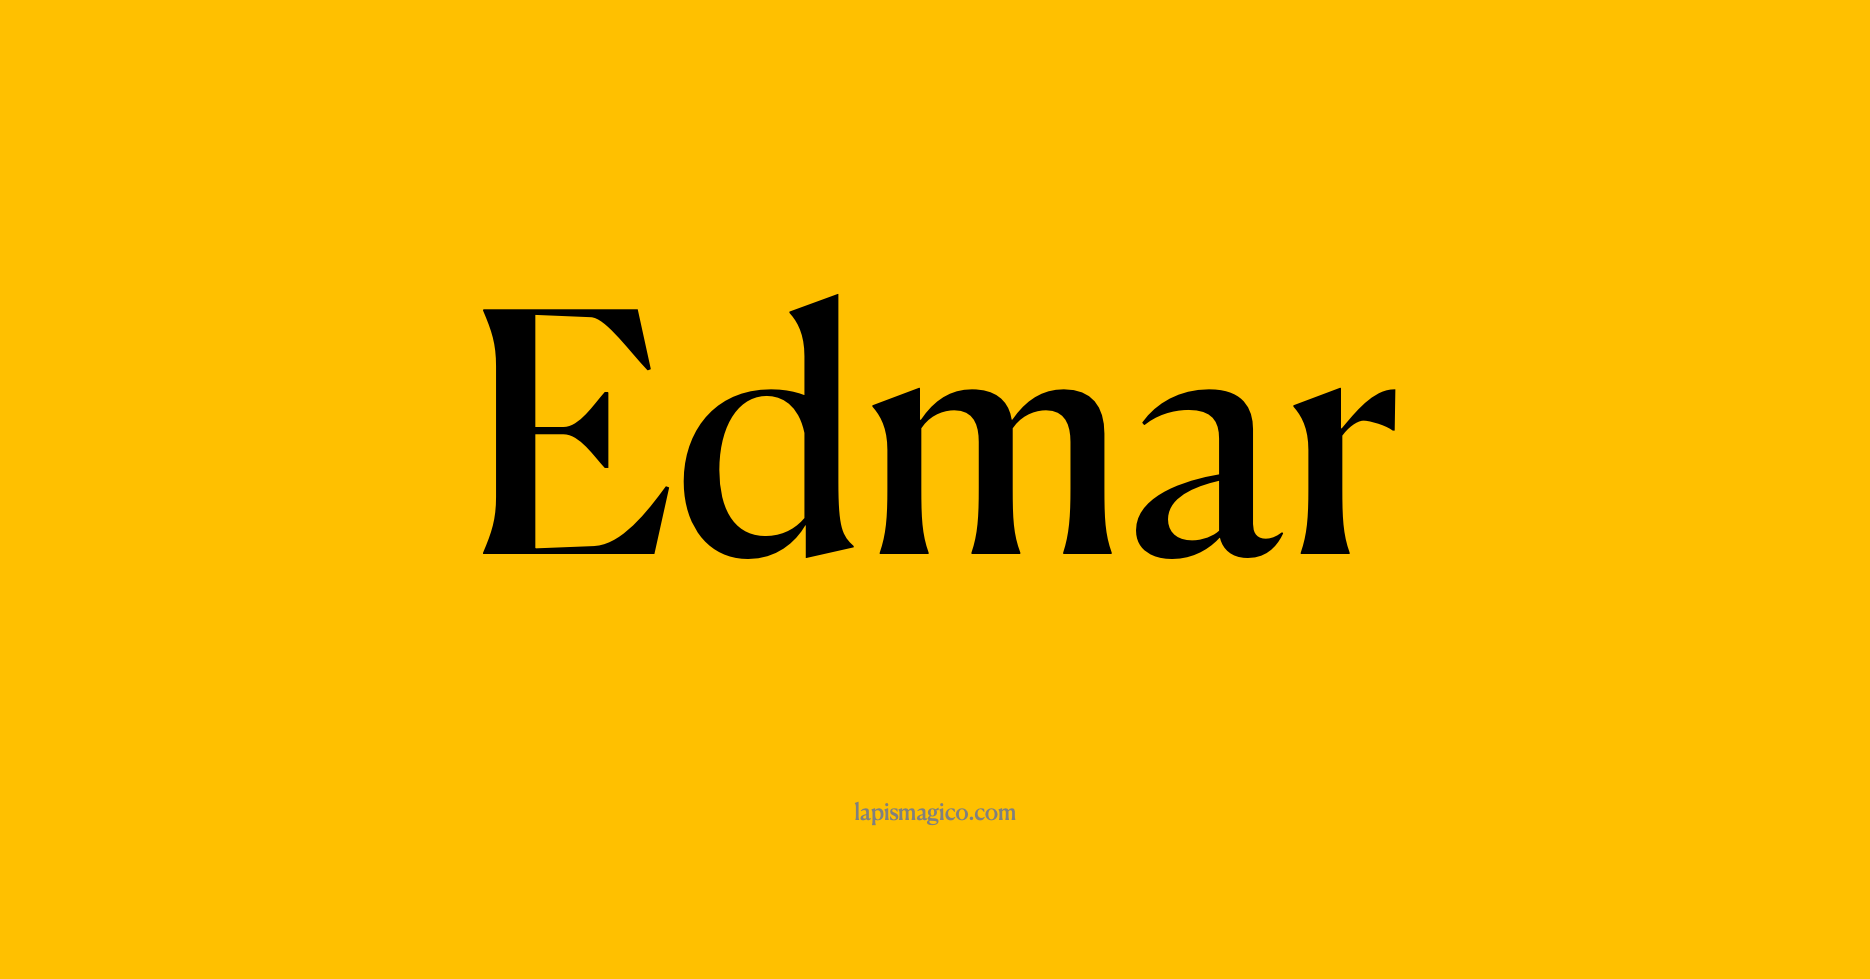 Nome Edmar, ficha divertida com pontilhado para crianças